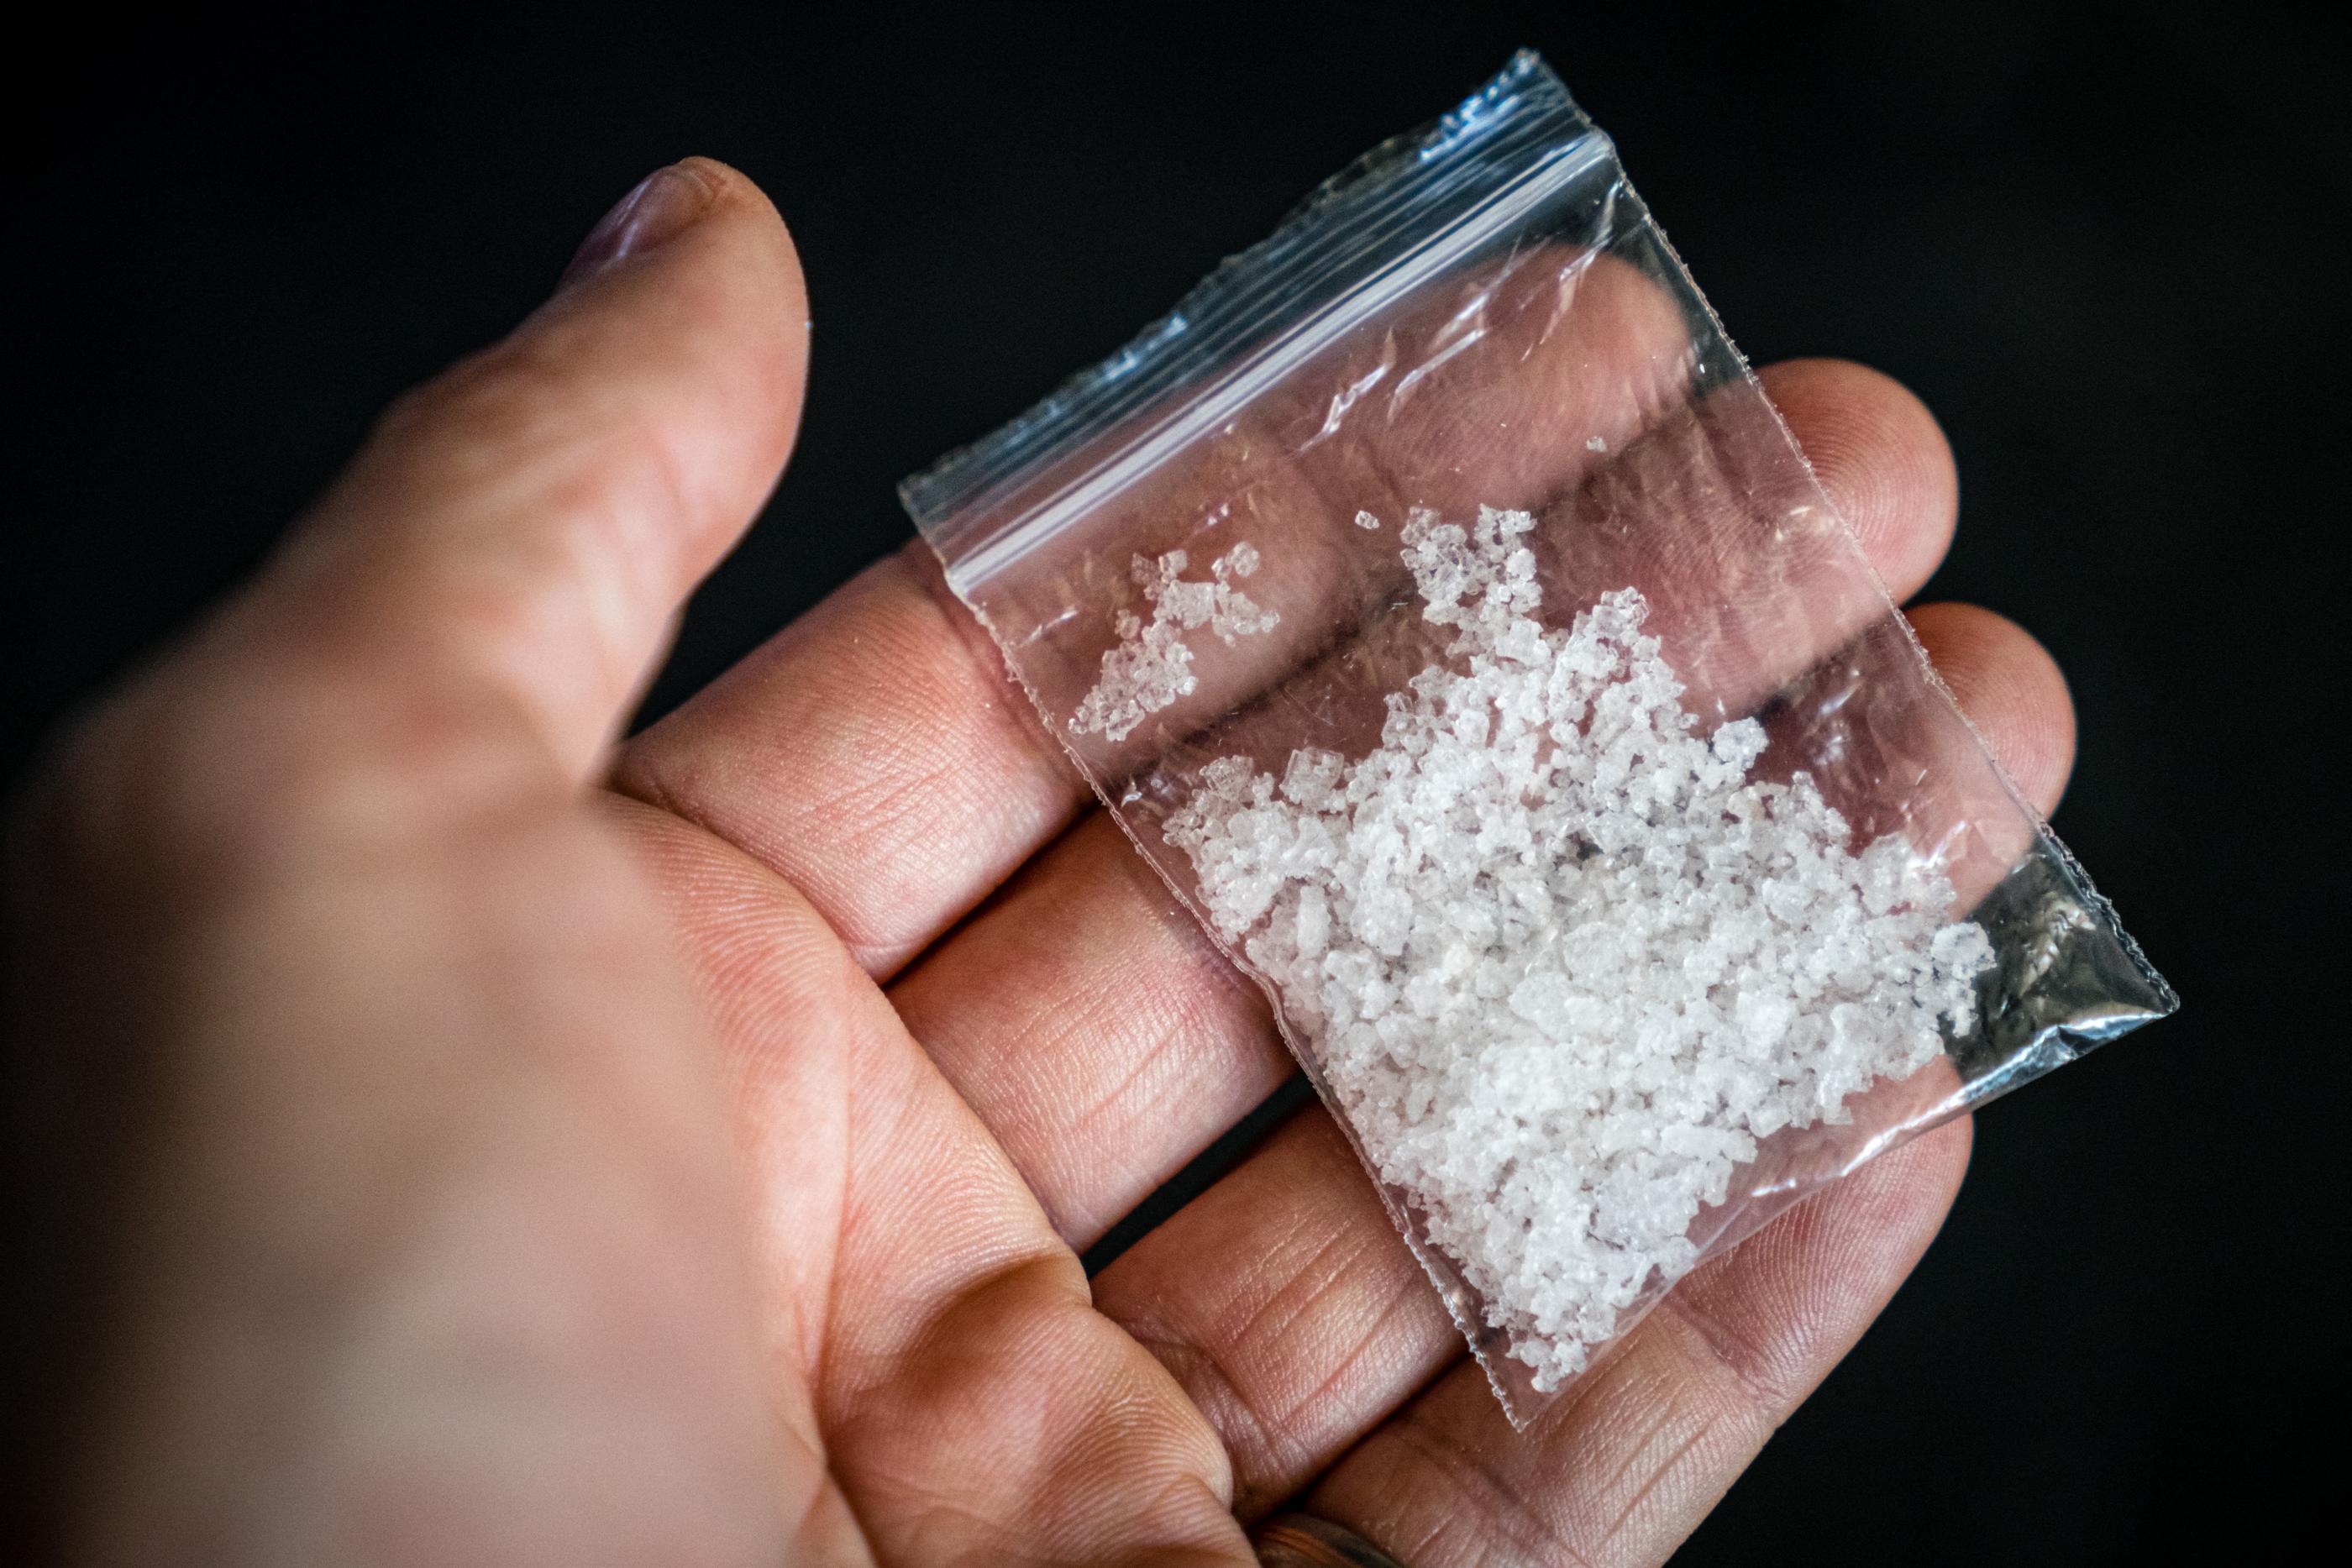 Trois grammes de cocaïne et 210 euros de bénef – Libération